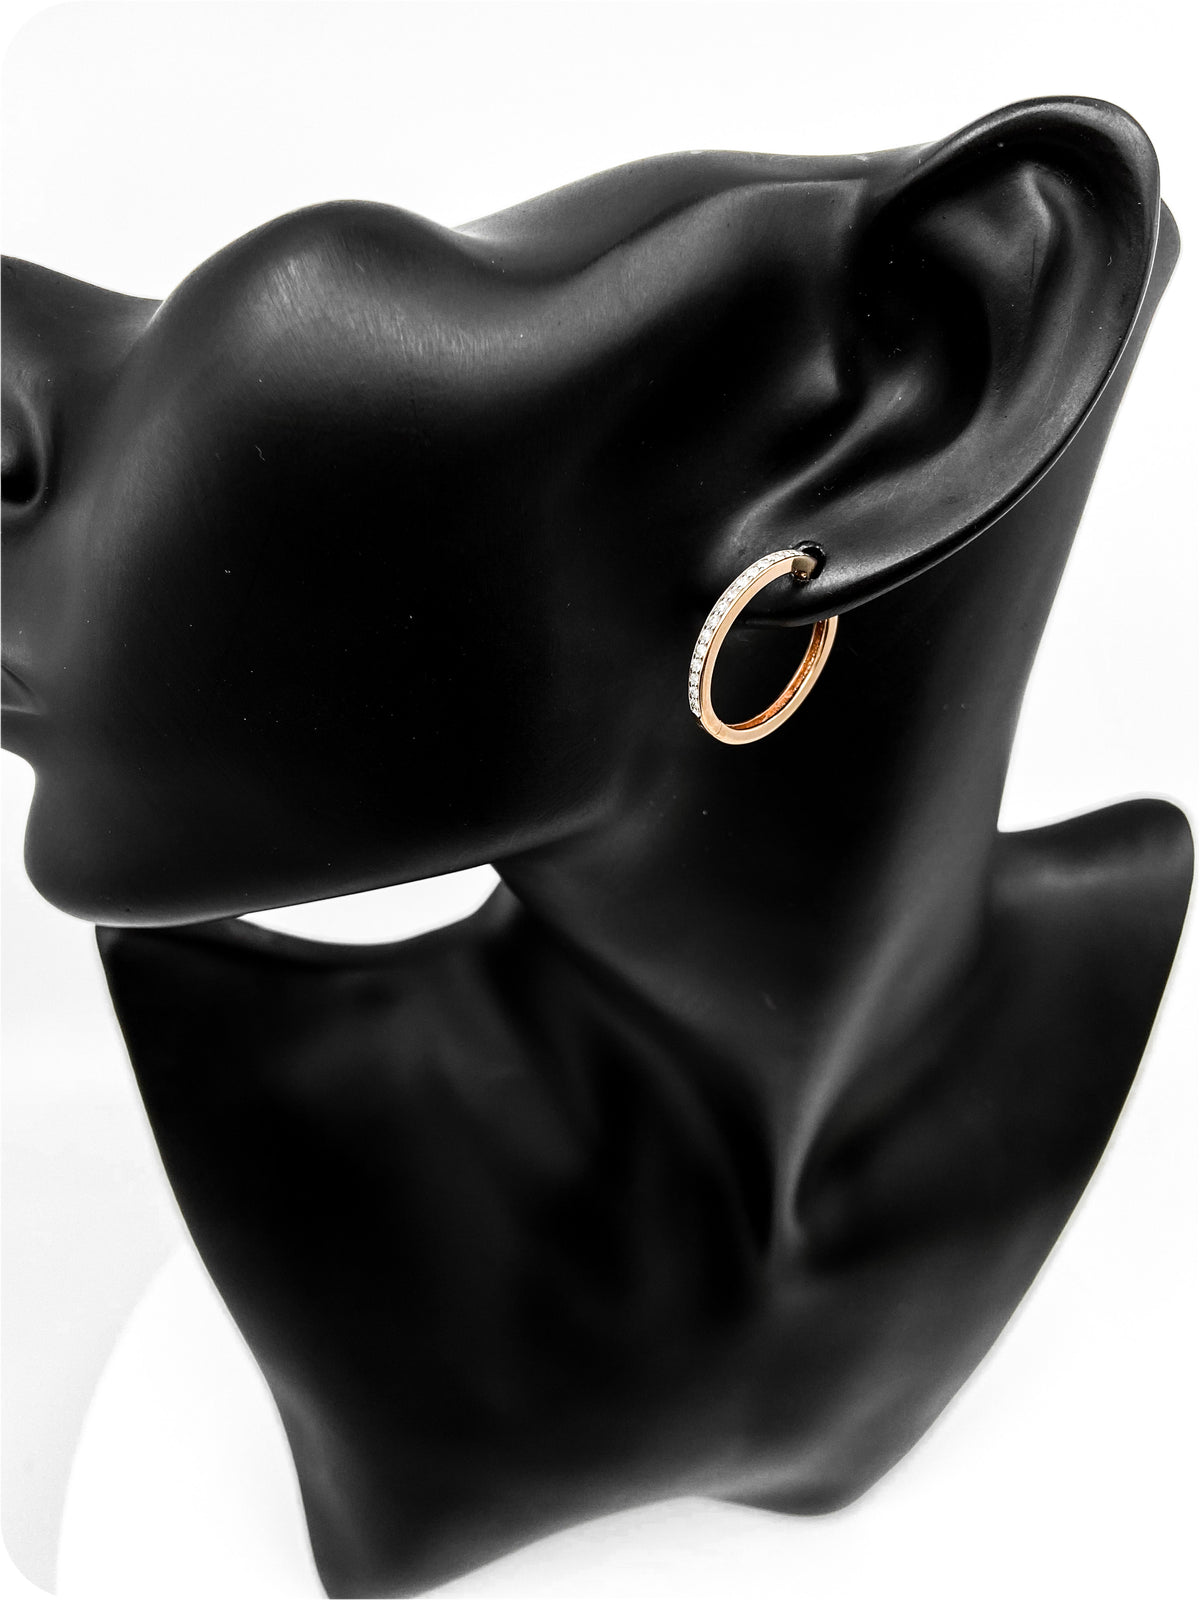 10K Rose Gold 0.25cttw Diamond Hoop Huggie Hinged Earrings